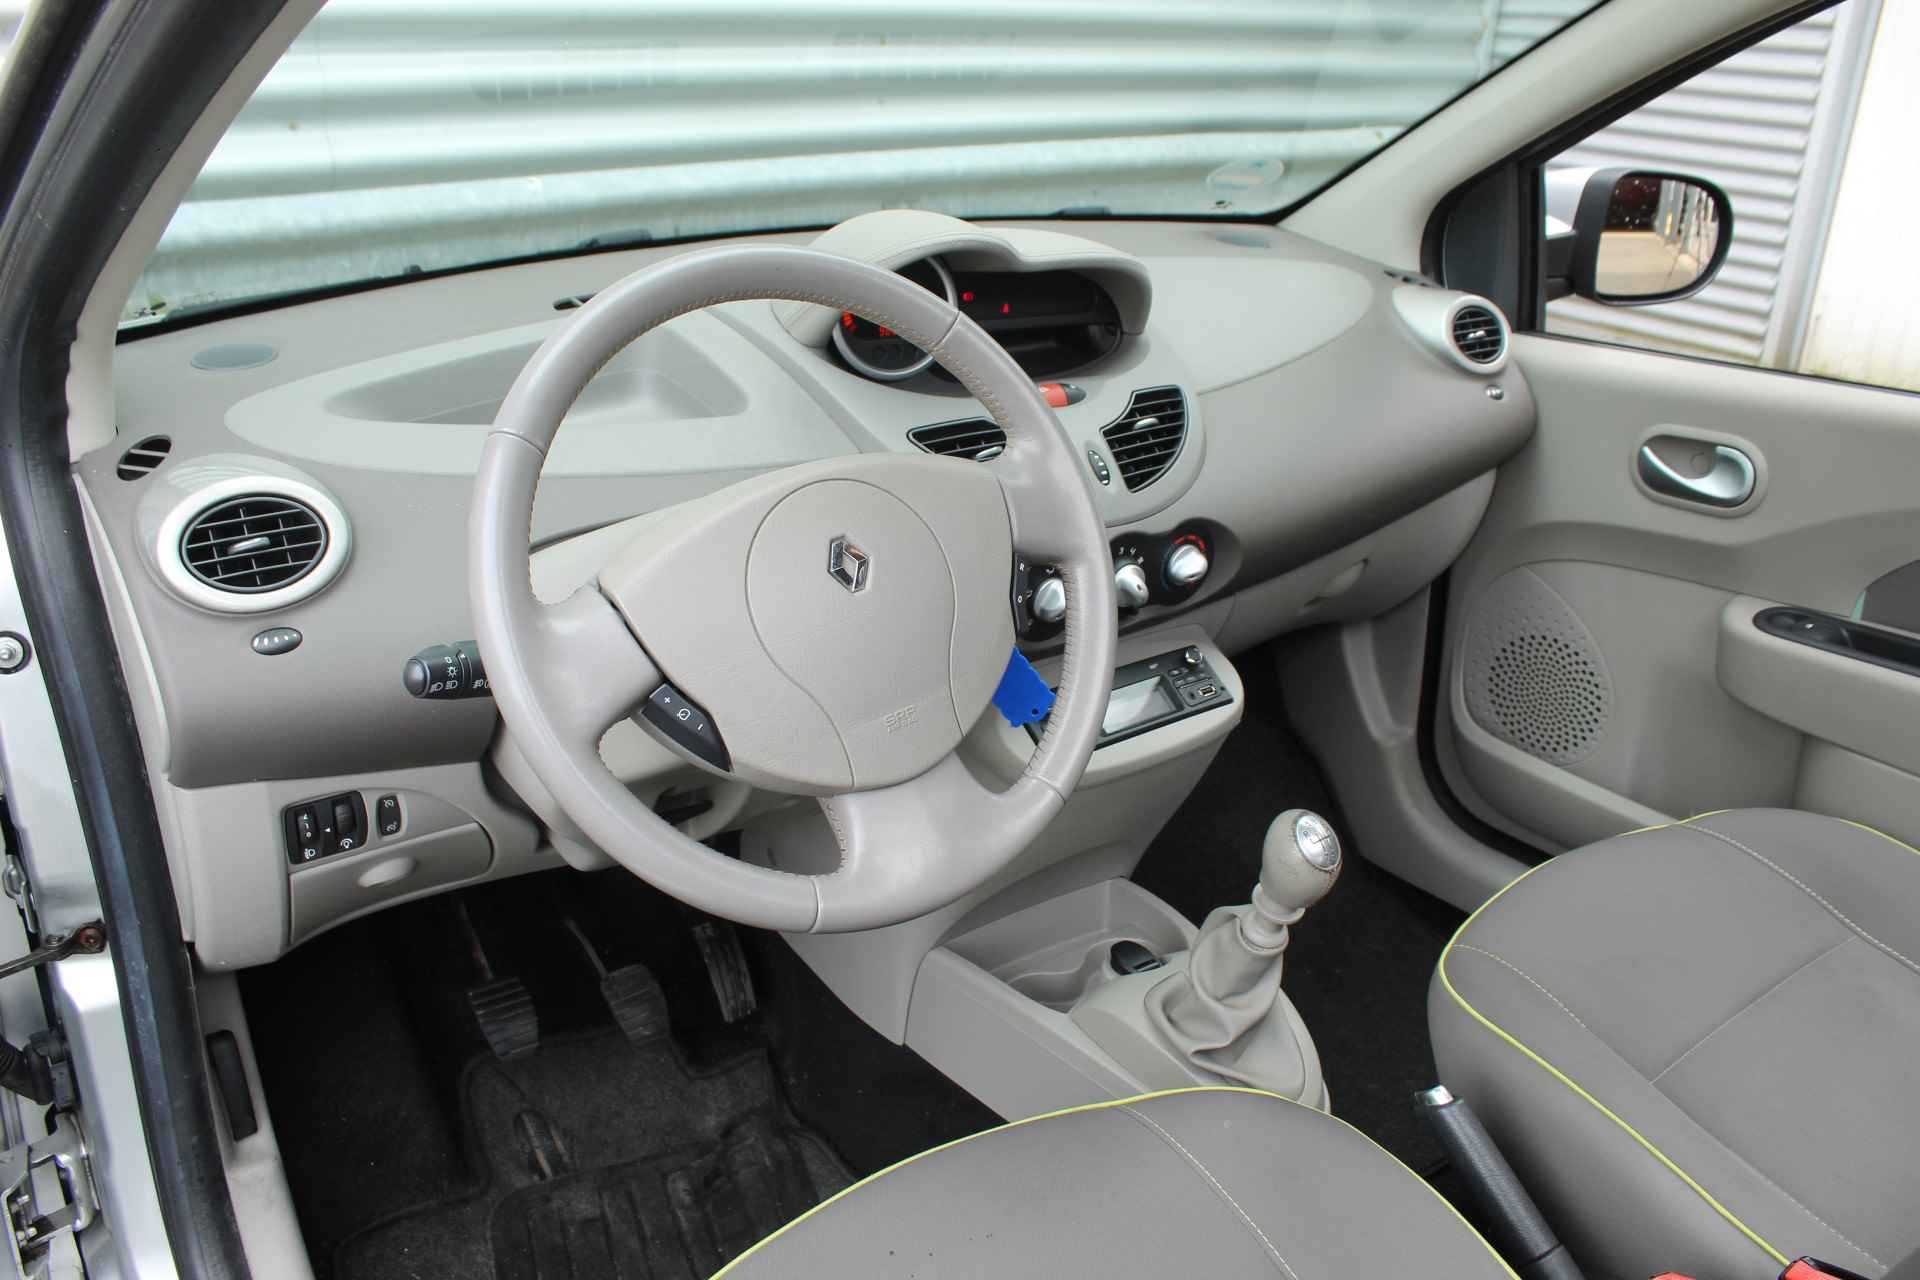 Renault Twingo 1.2 16V 75pk Dynamique Cabrio dak Cruise El. Vouwdak  2 Stoelen achter CPV El. Ramen - 12/30